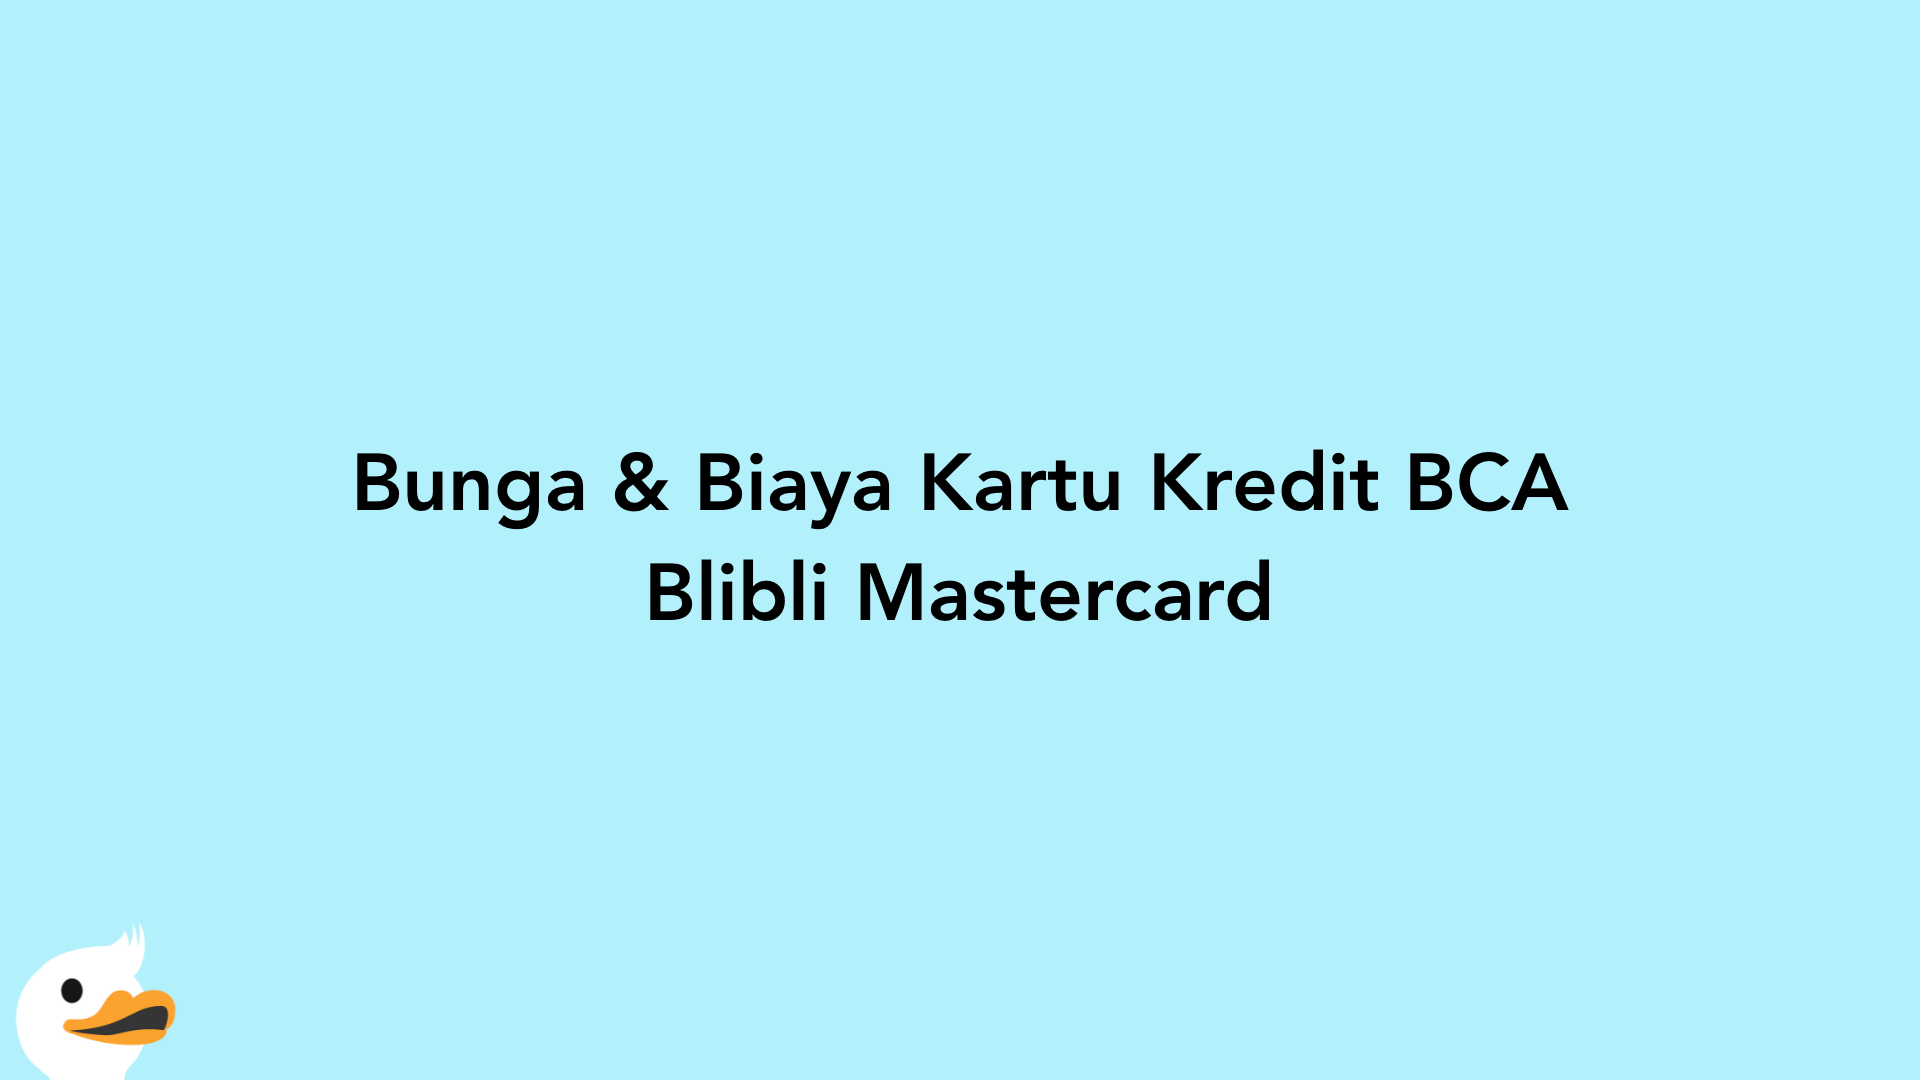 Bunga & Biaya Kartu Kredit BCA Blibli Mastercard